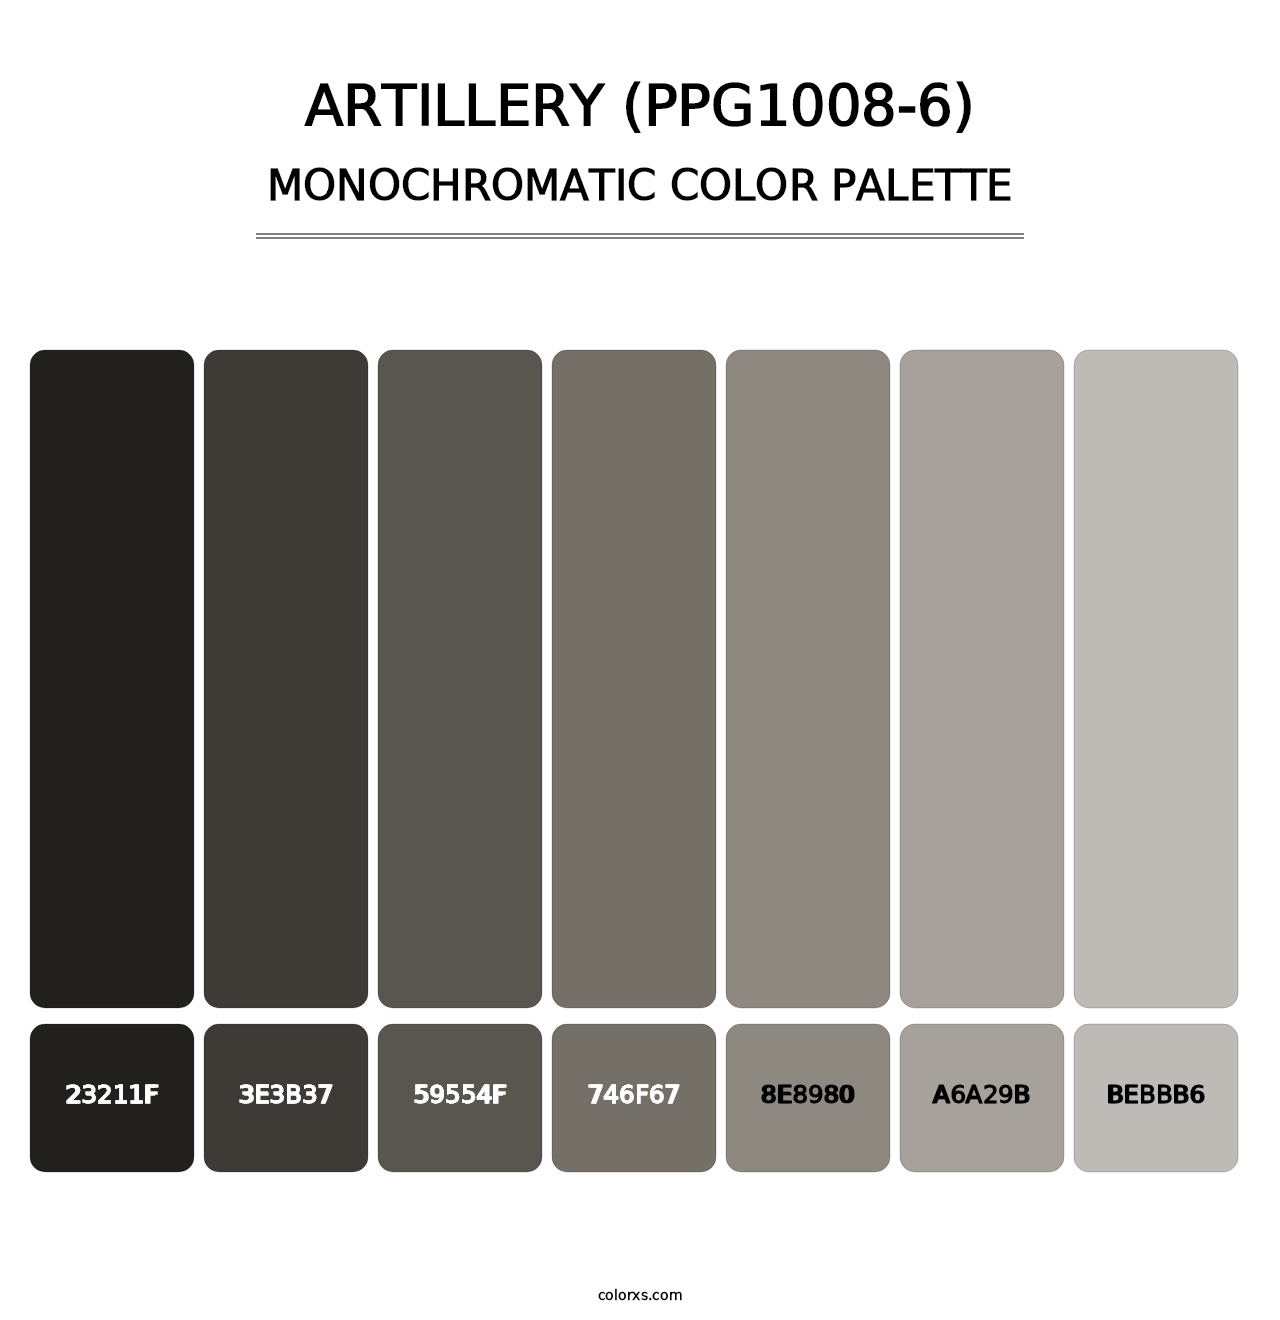 Artillery (PPG1008-6) - Monochromatic Color Palette